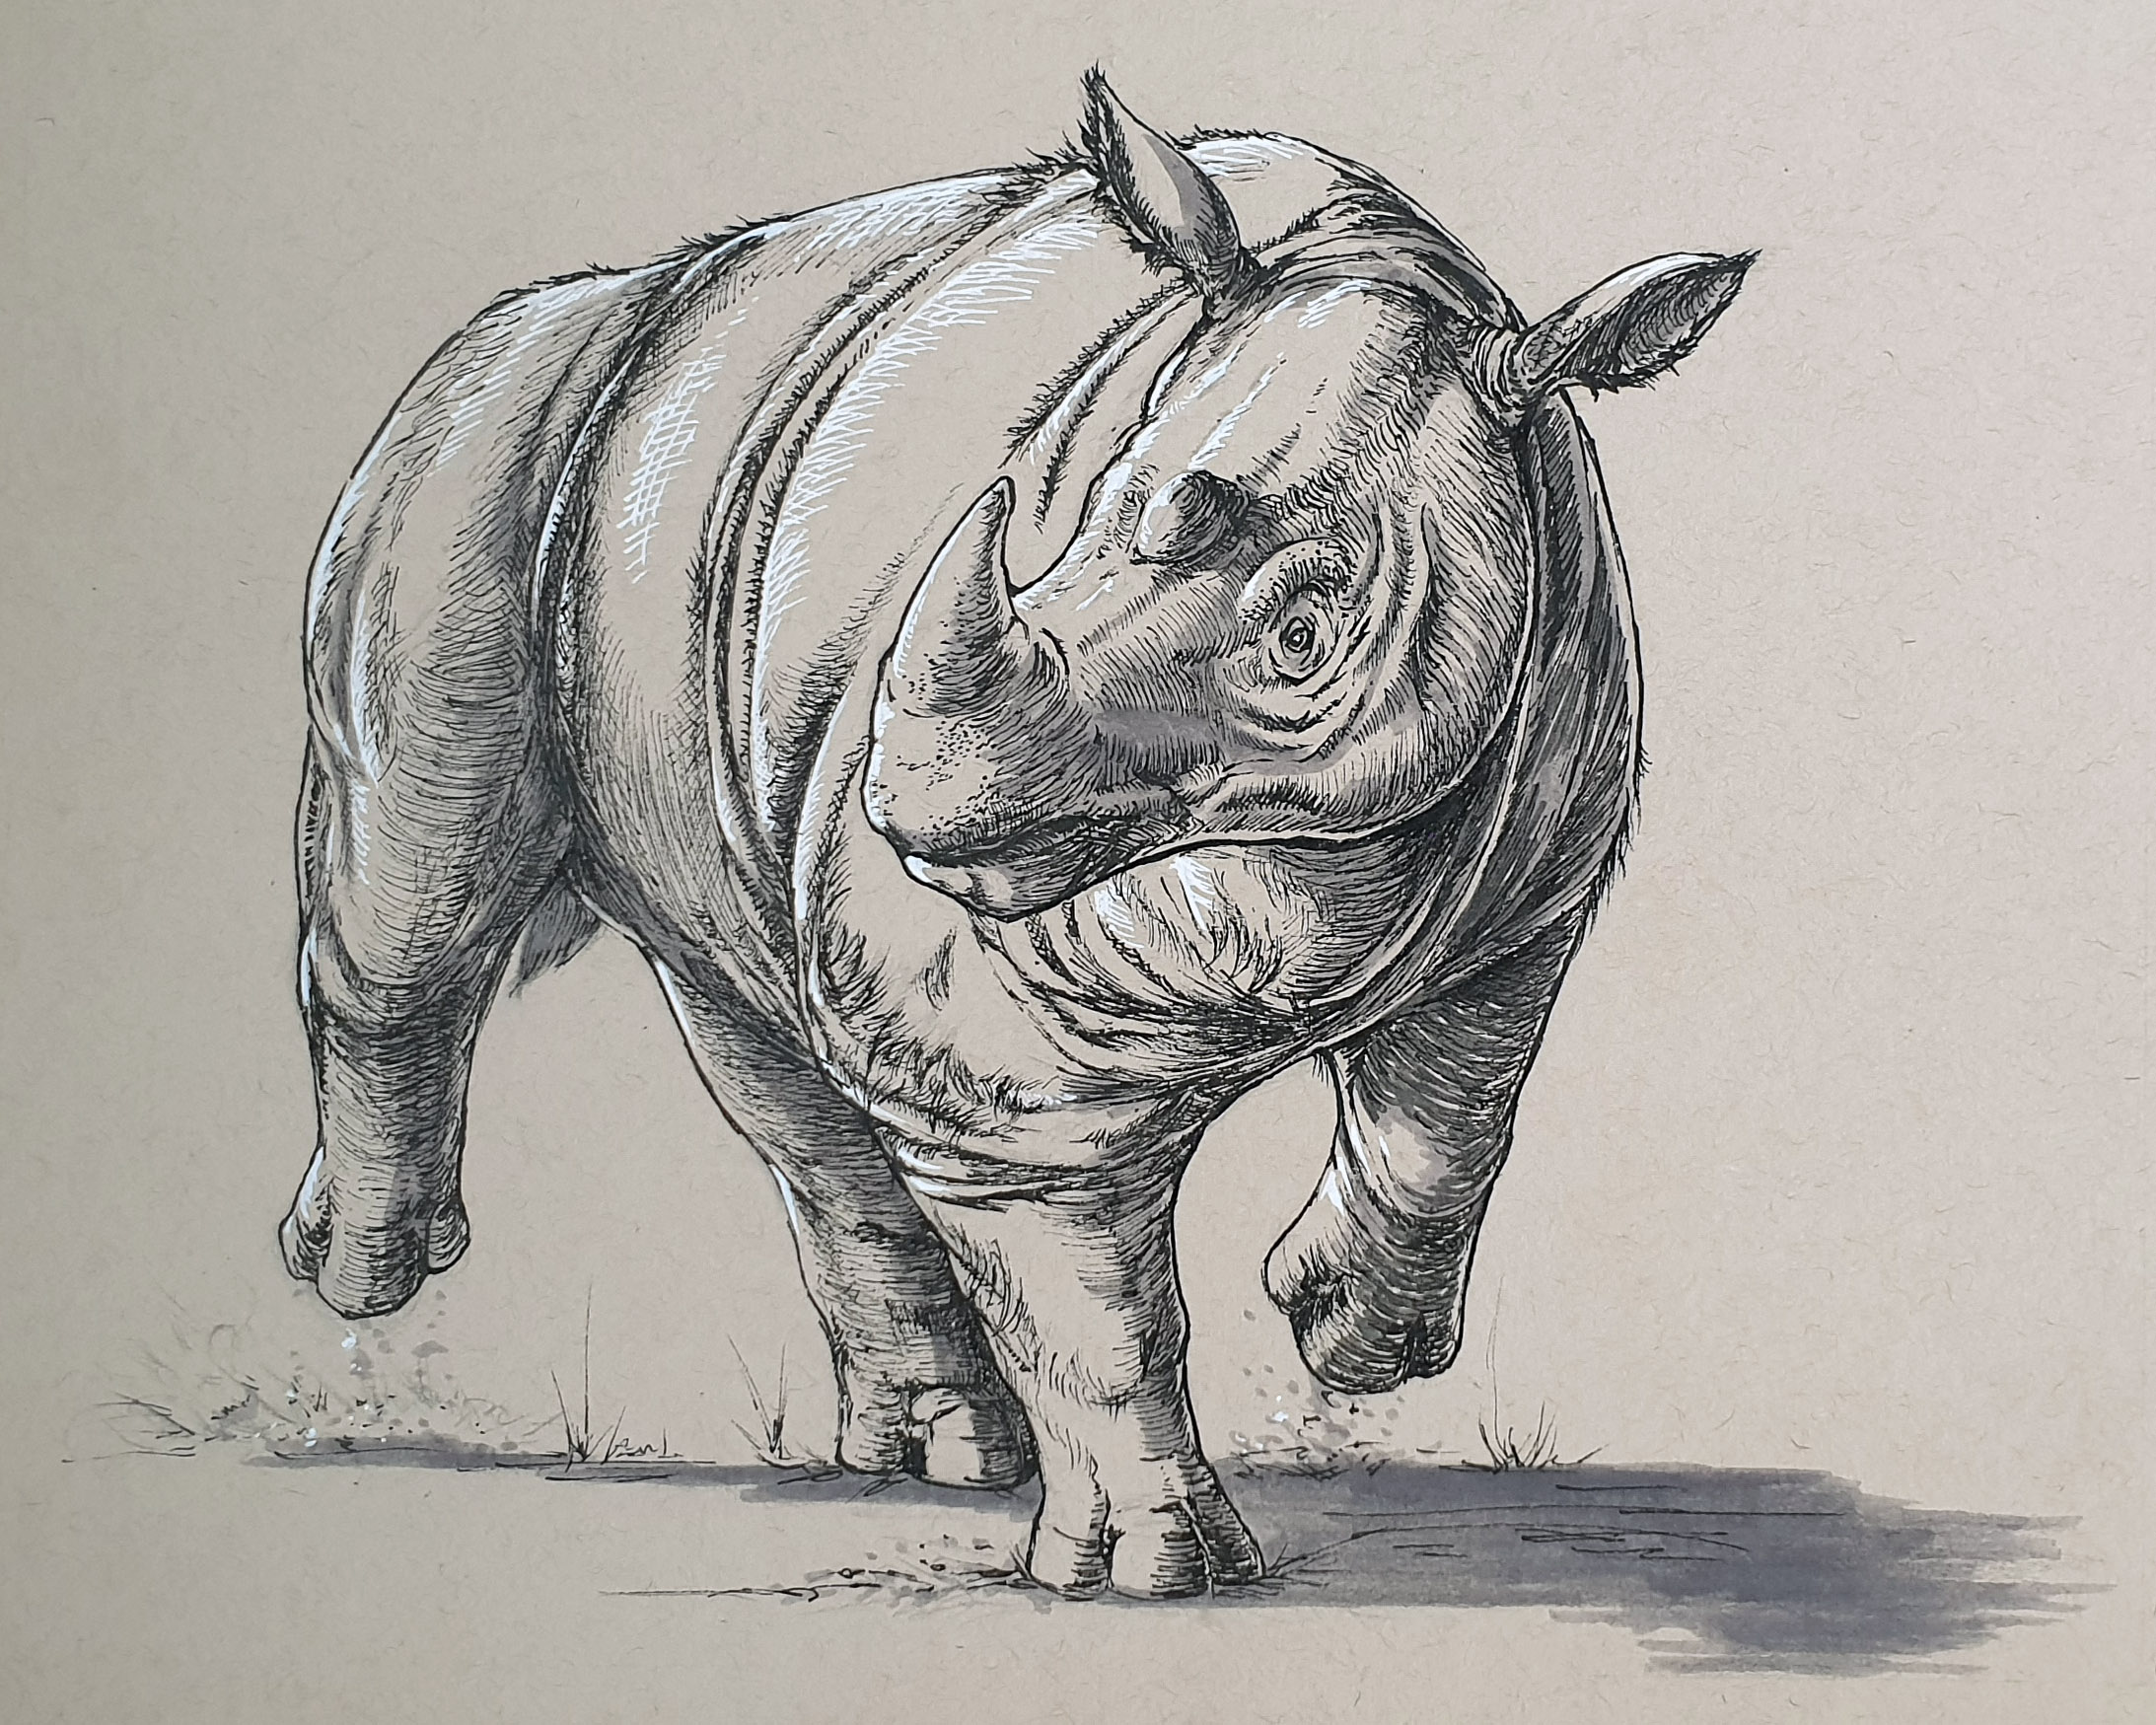 Day 5: Sumatran Rhinoceros